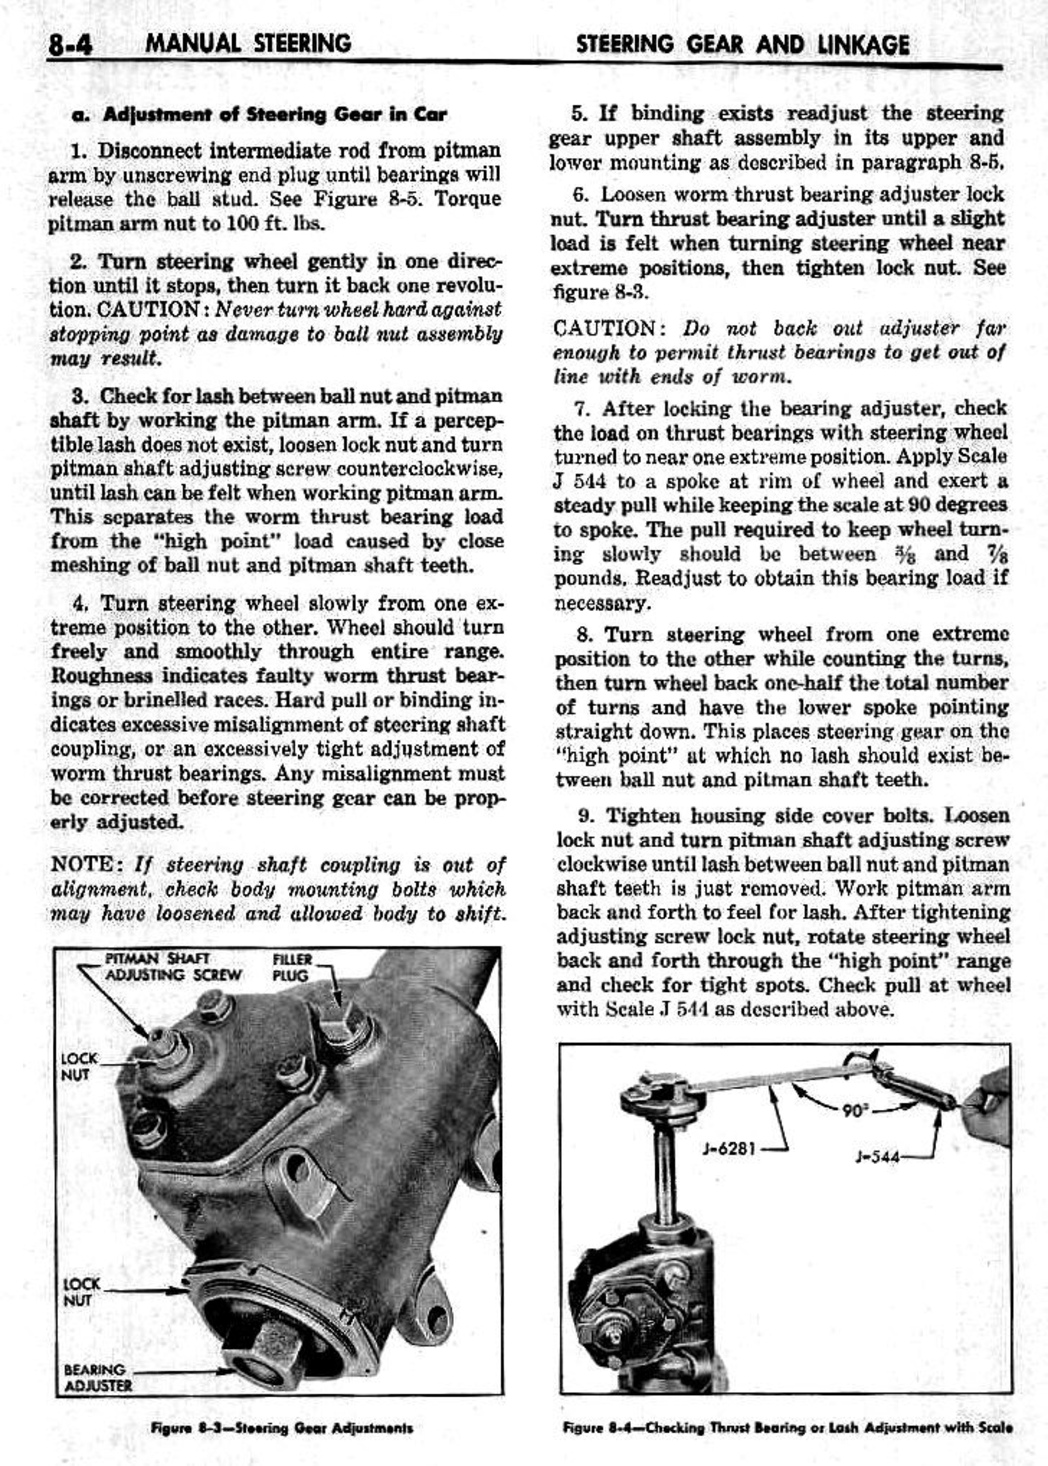 n_09 1959 Buick Shop Manual - Steering-004-004.jpg